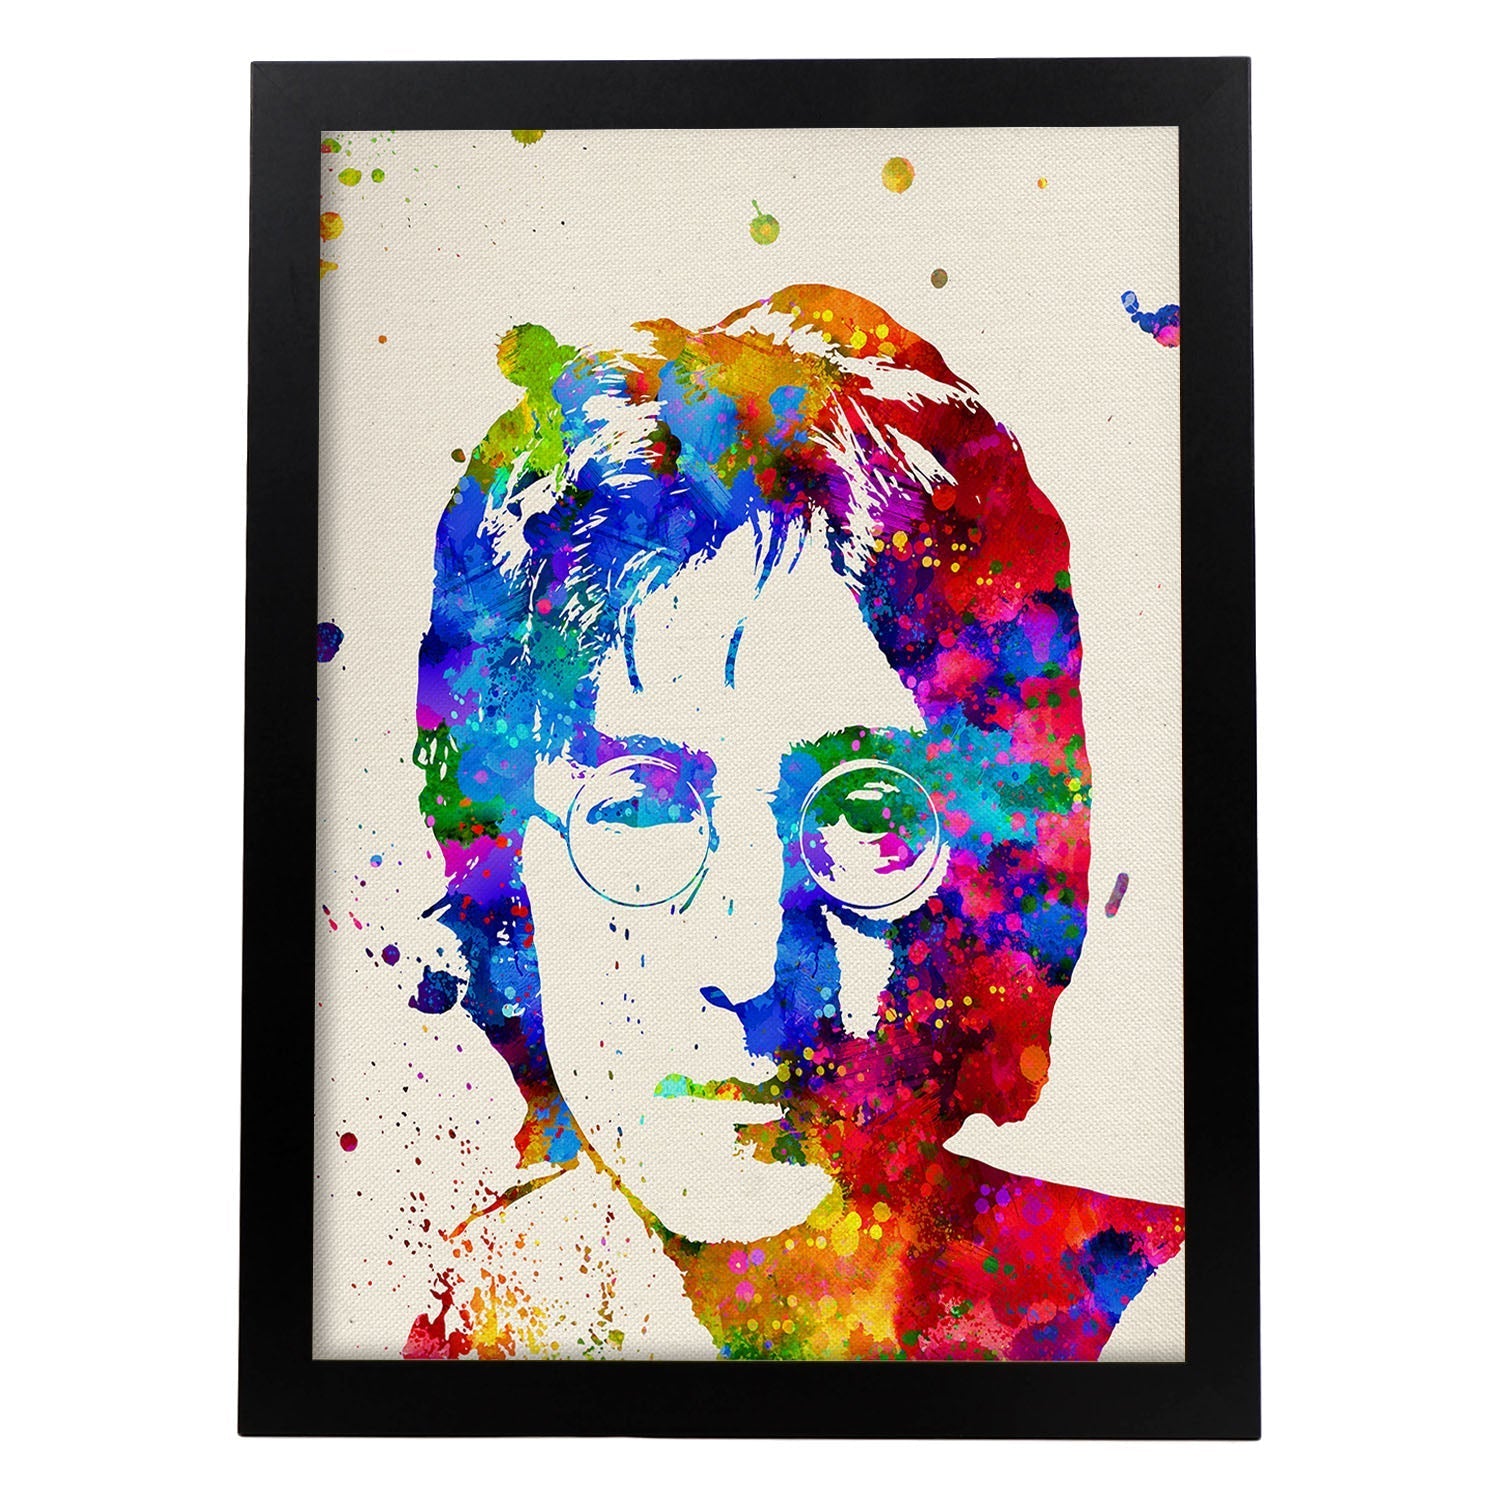 Poster imagen de John Lennon. Posters con diseño acuarela de famosos, actores, músicos-Artwork-Nacnic-A3-Marco Negro-Nacnic Estudio SL